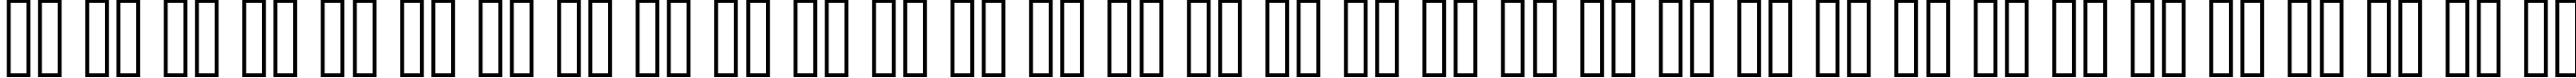 Пример написания русского алфавита шрифтом copy 08_65